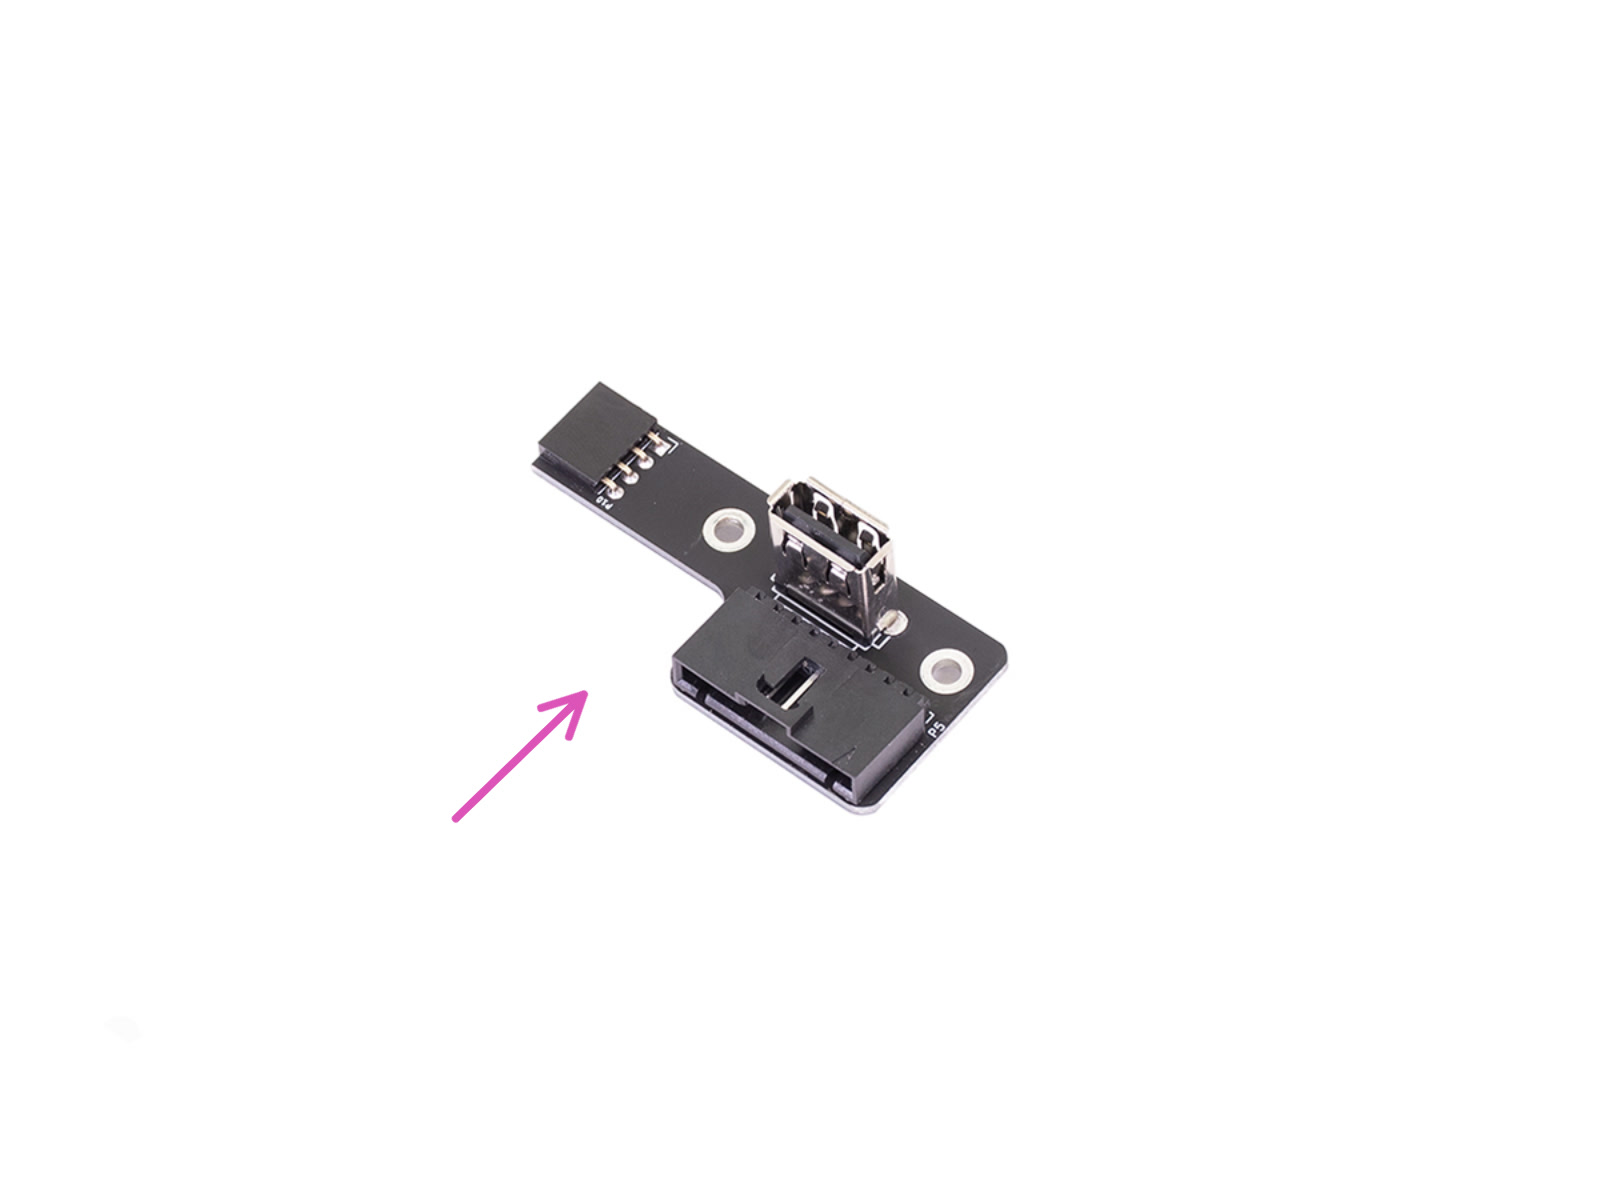 Nowe gniazdo USB - przygotowanie części (wersja 3.0)